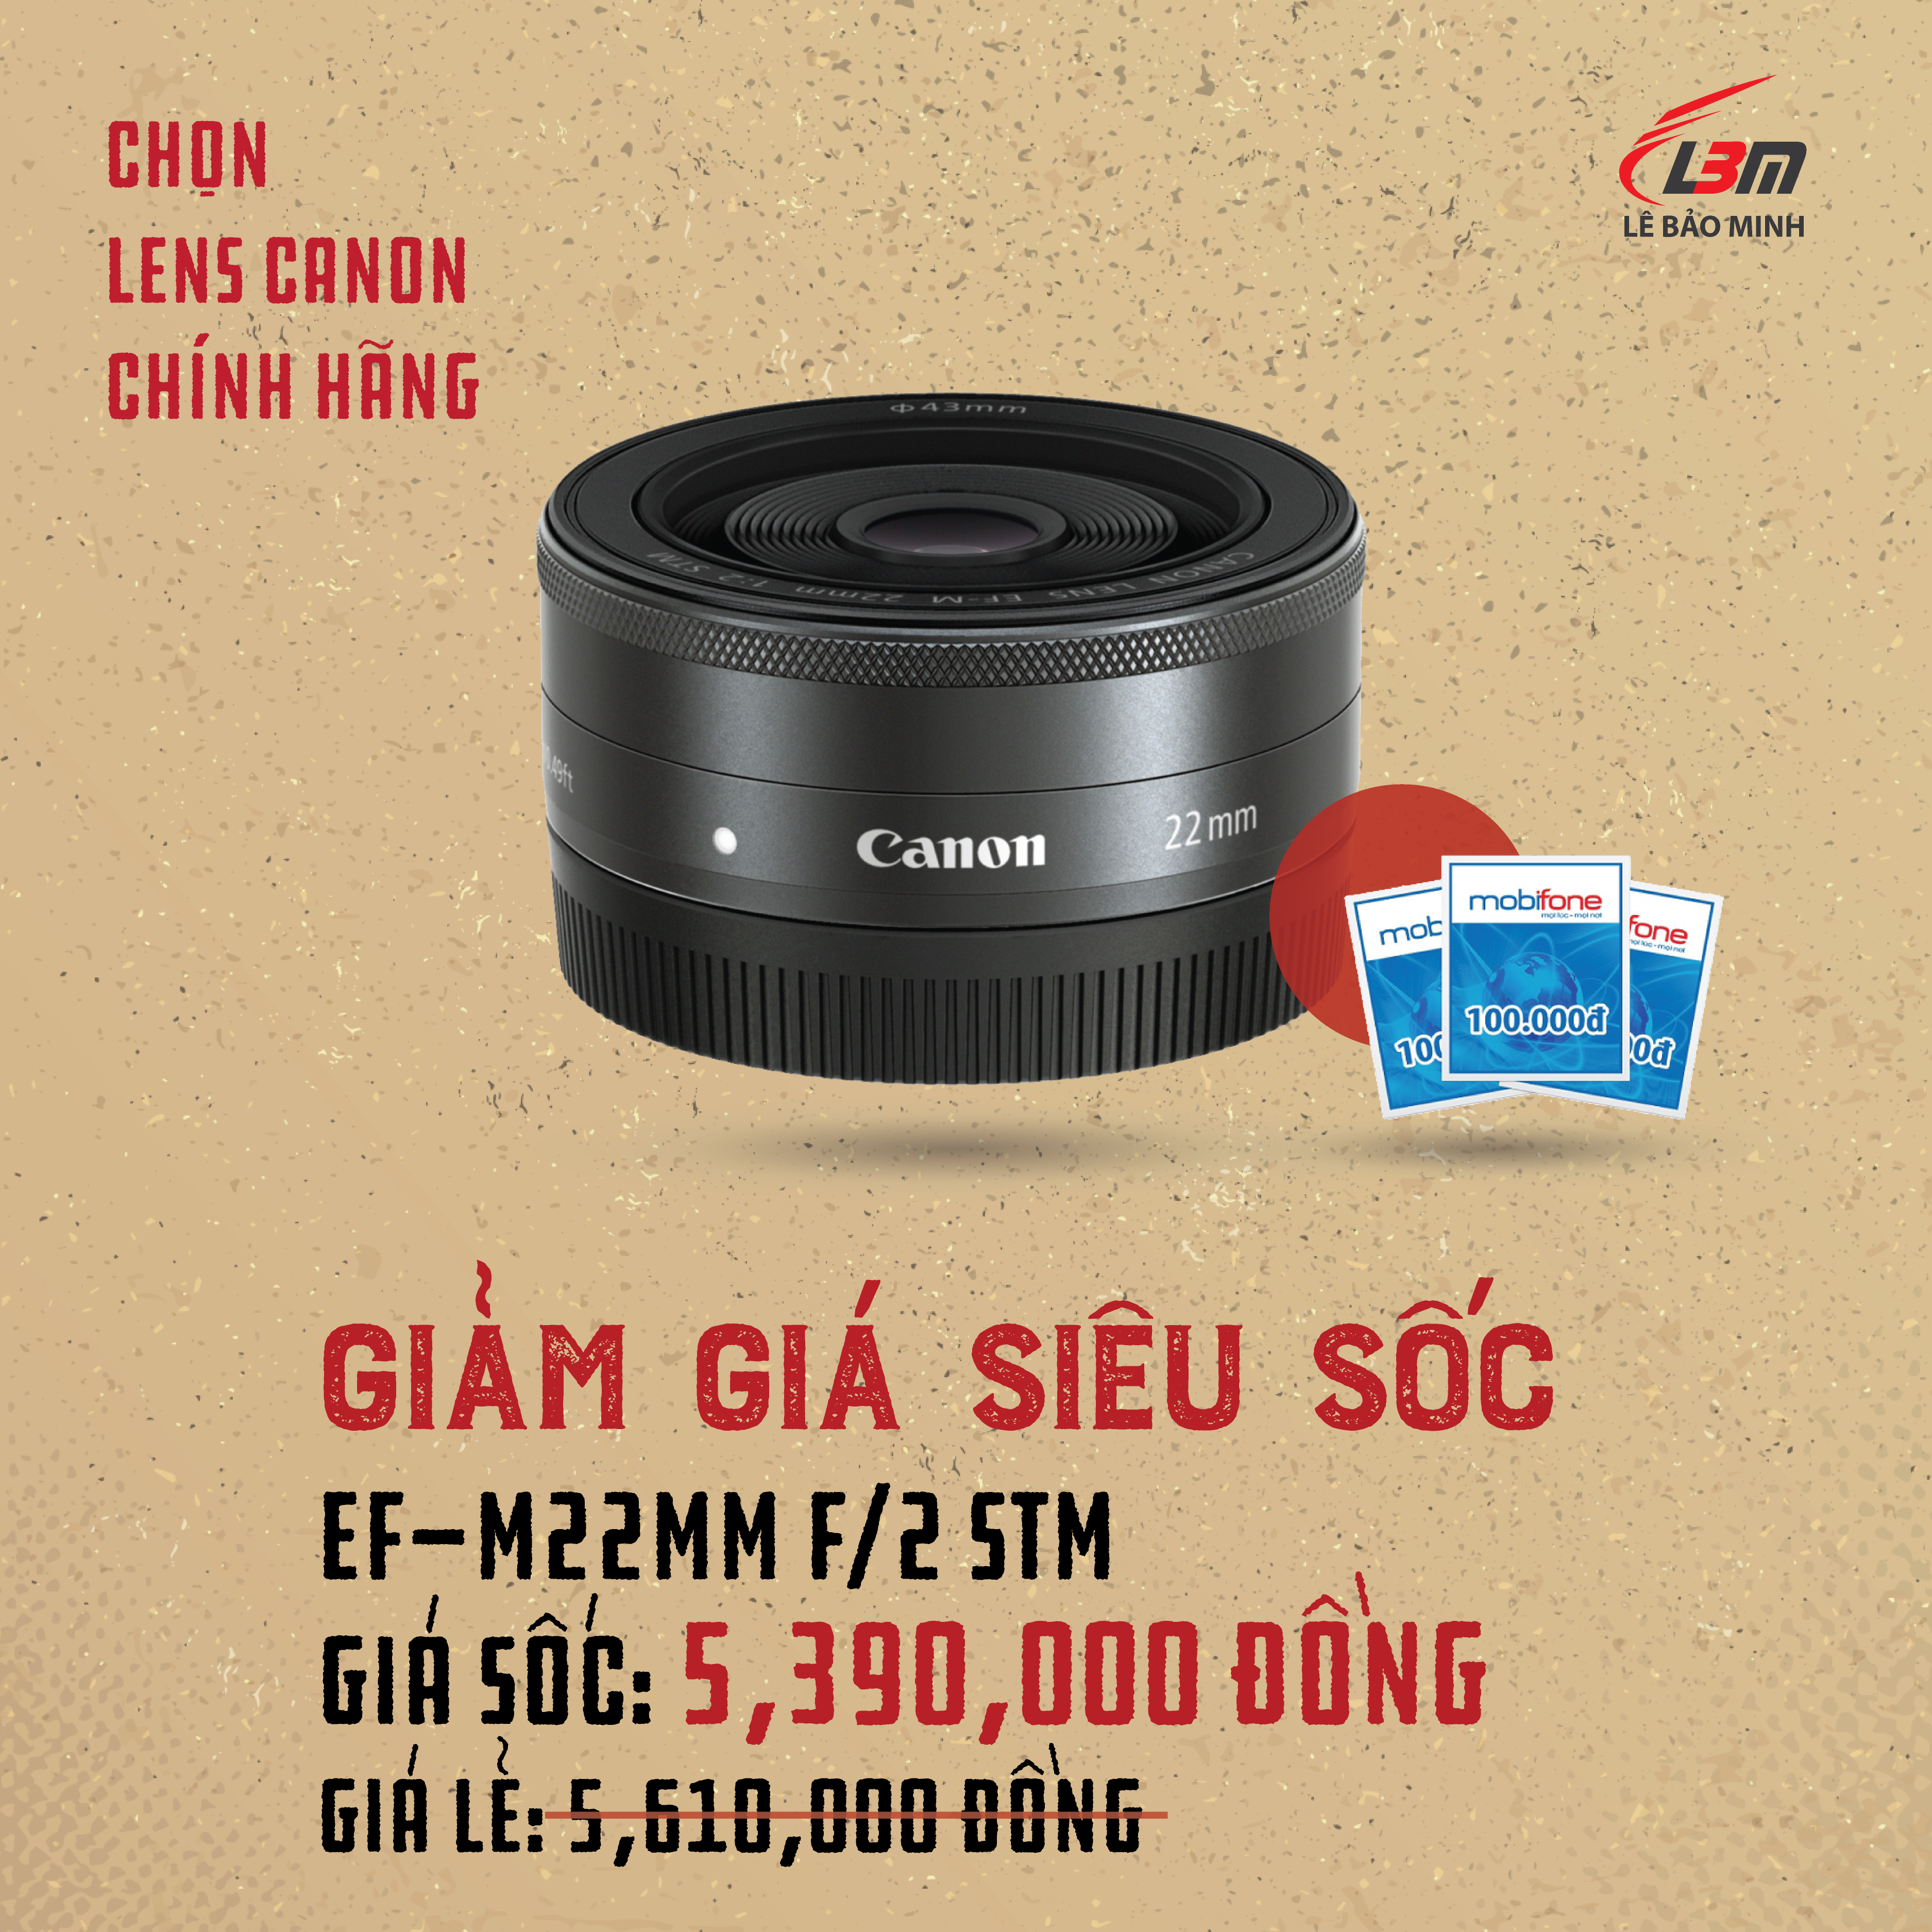 “Chọn Lens Canon chính hãng – Giảm giá siêu sốc” từ 14/02/2020 đến ngày 31/05/2020